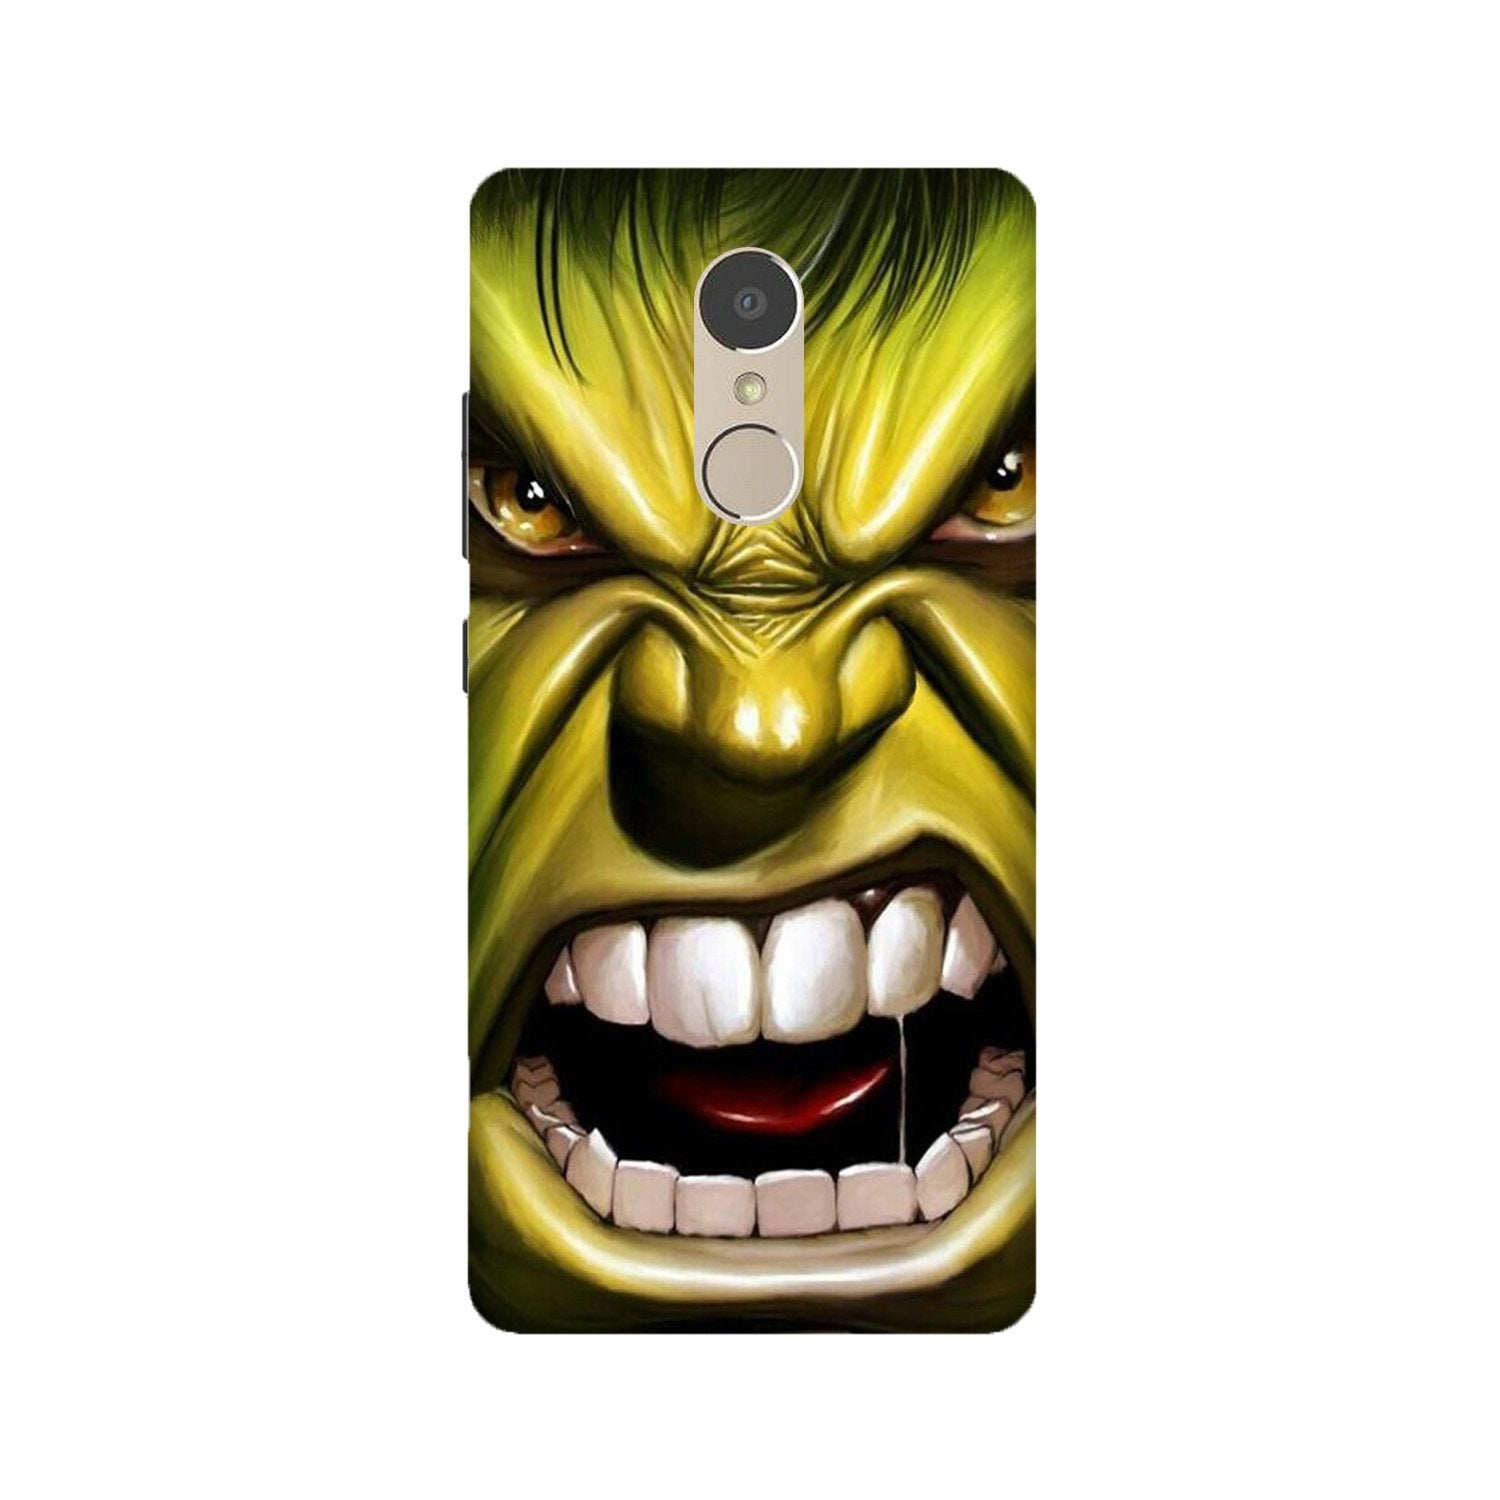 Hulk Superhero Case for Lenovo K6 Note(Design - 121)